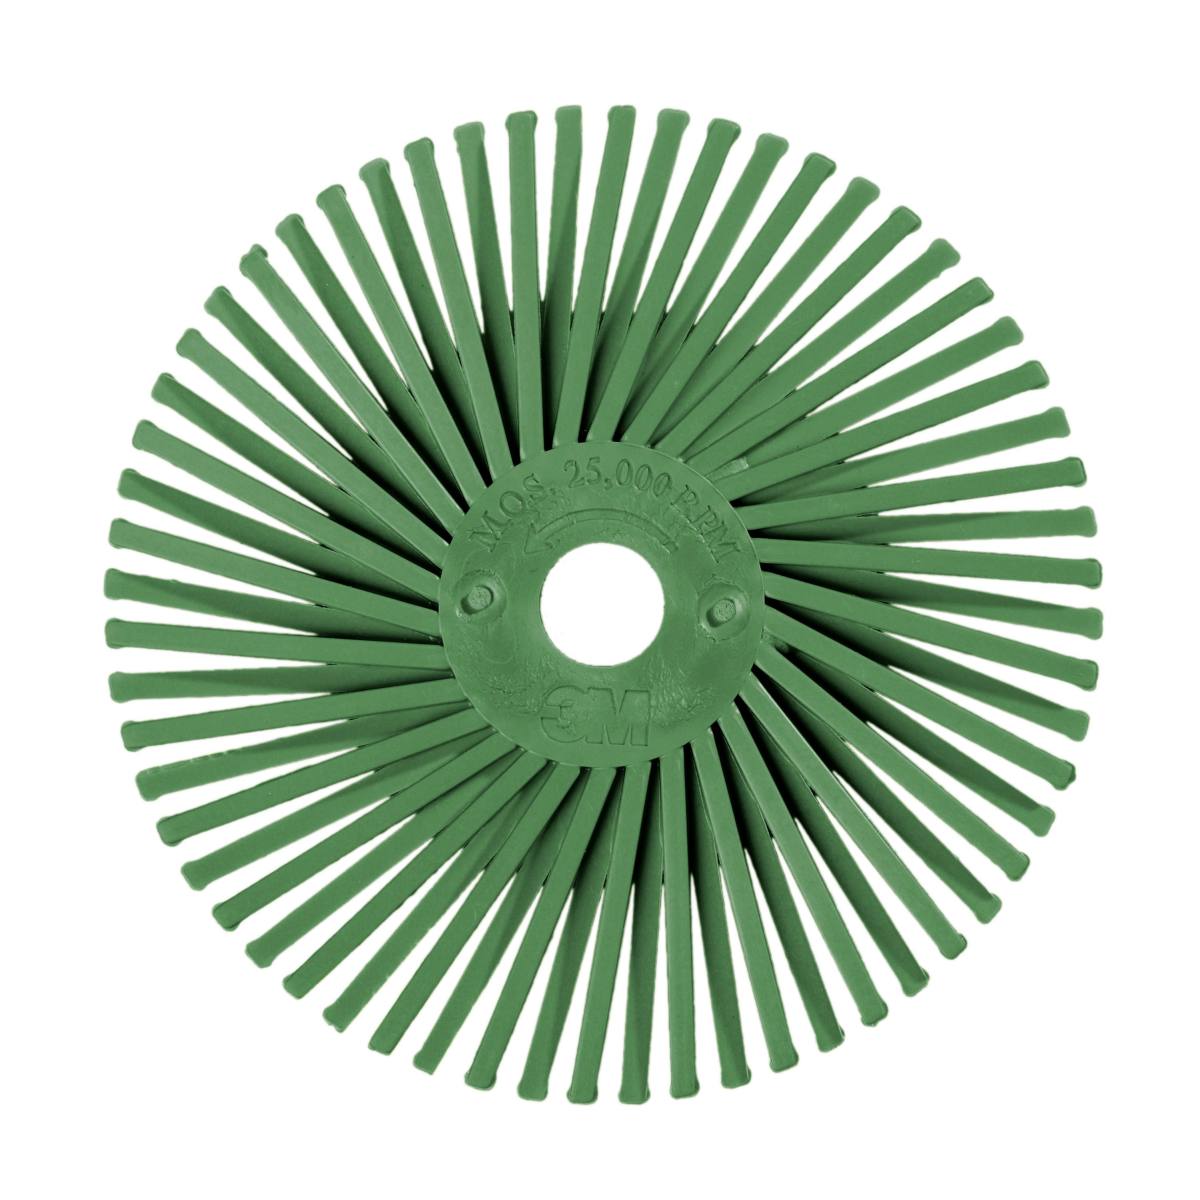 3M Scotch-Brite radiale a segmenti singoli RB-ZB, verde chiaro, 50,8 mm, 1 micron tipo C